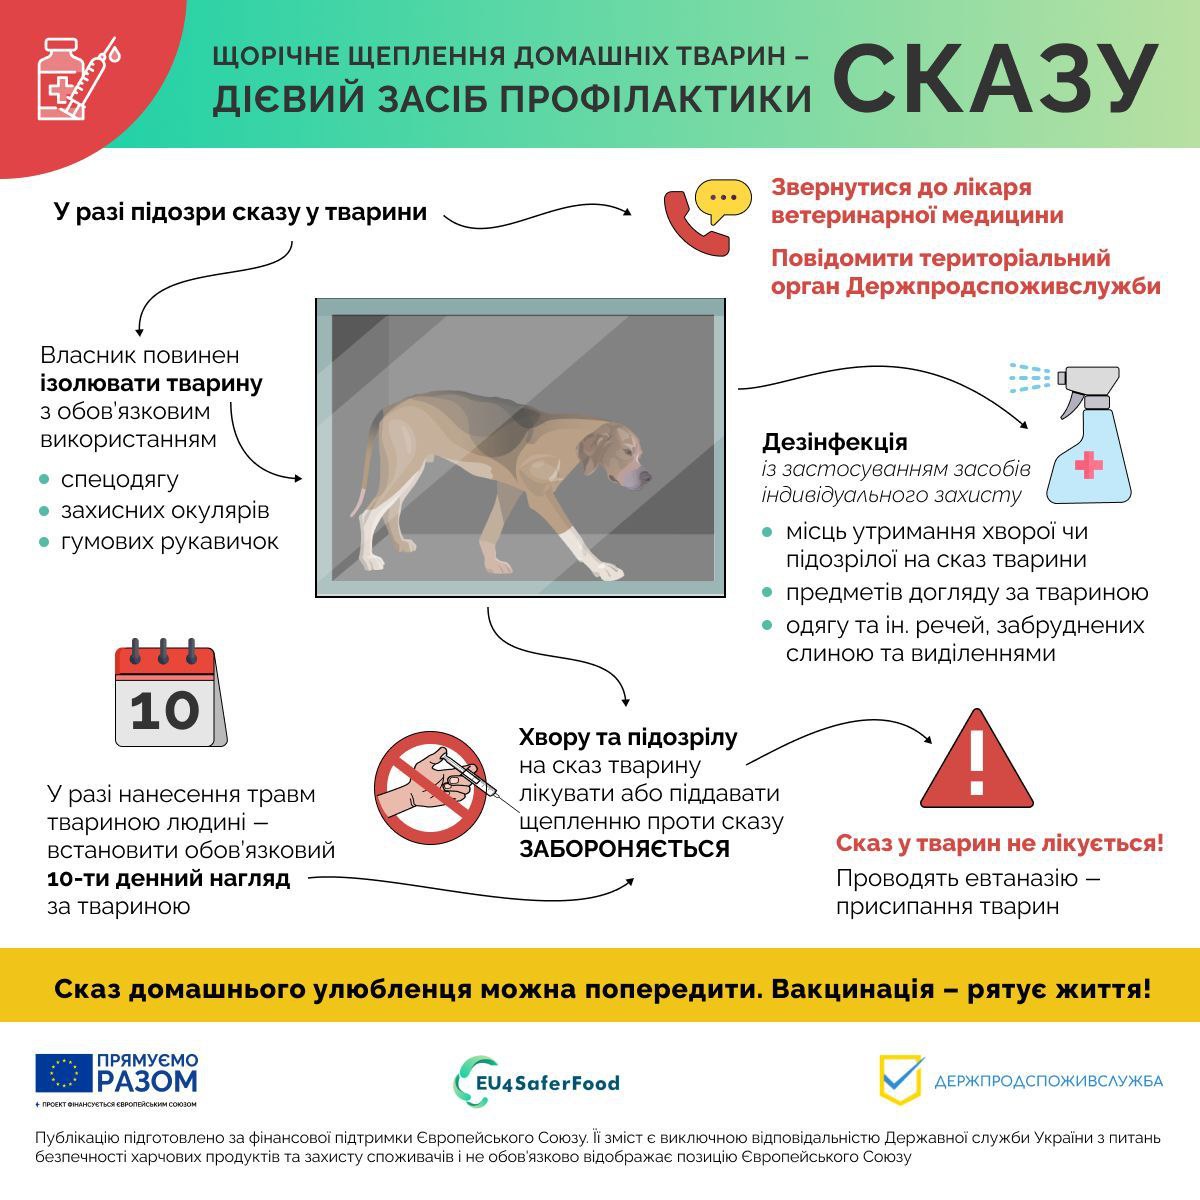 В Славянске домашних животных будут вакцинировать от бешенства: где сделать прививку любимцу 4